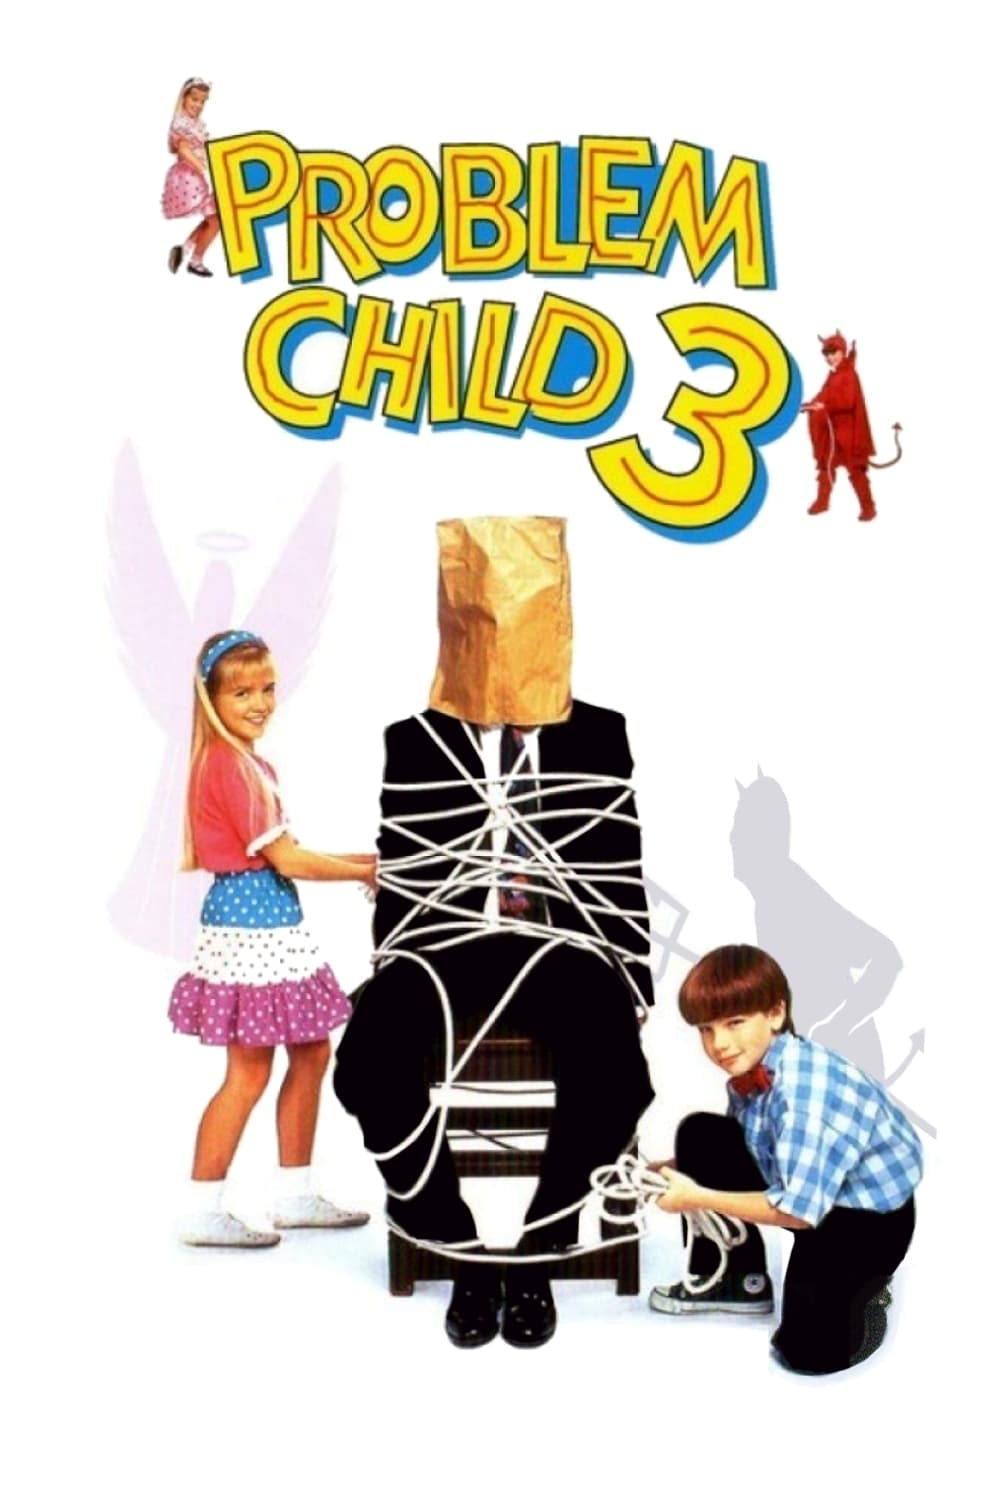 Problem Child 3: Junior in Love (1995)